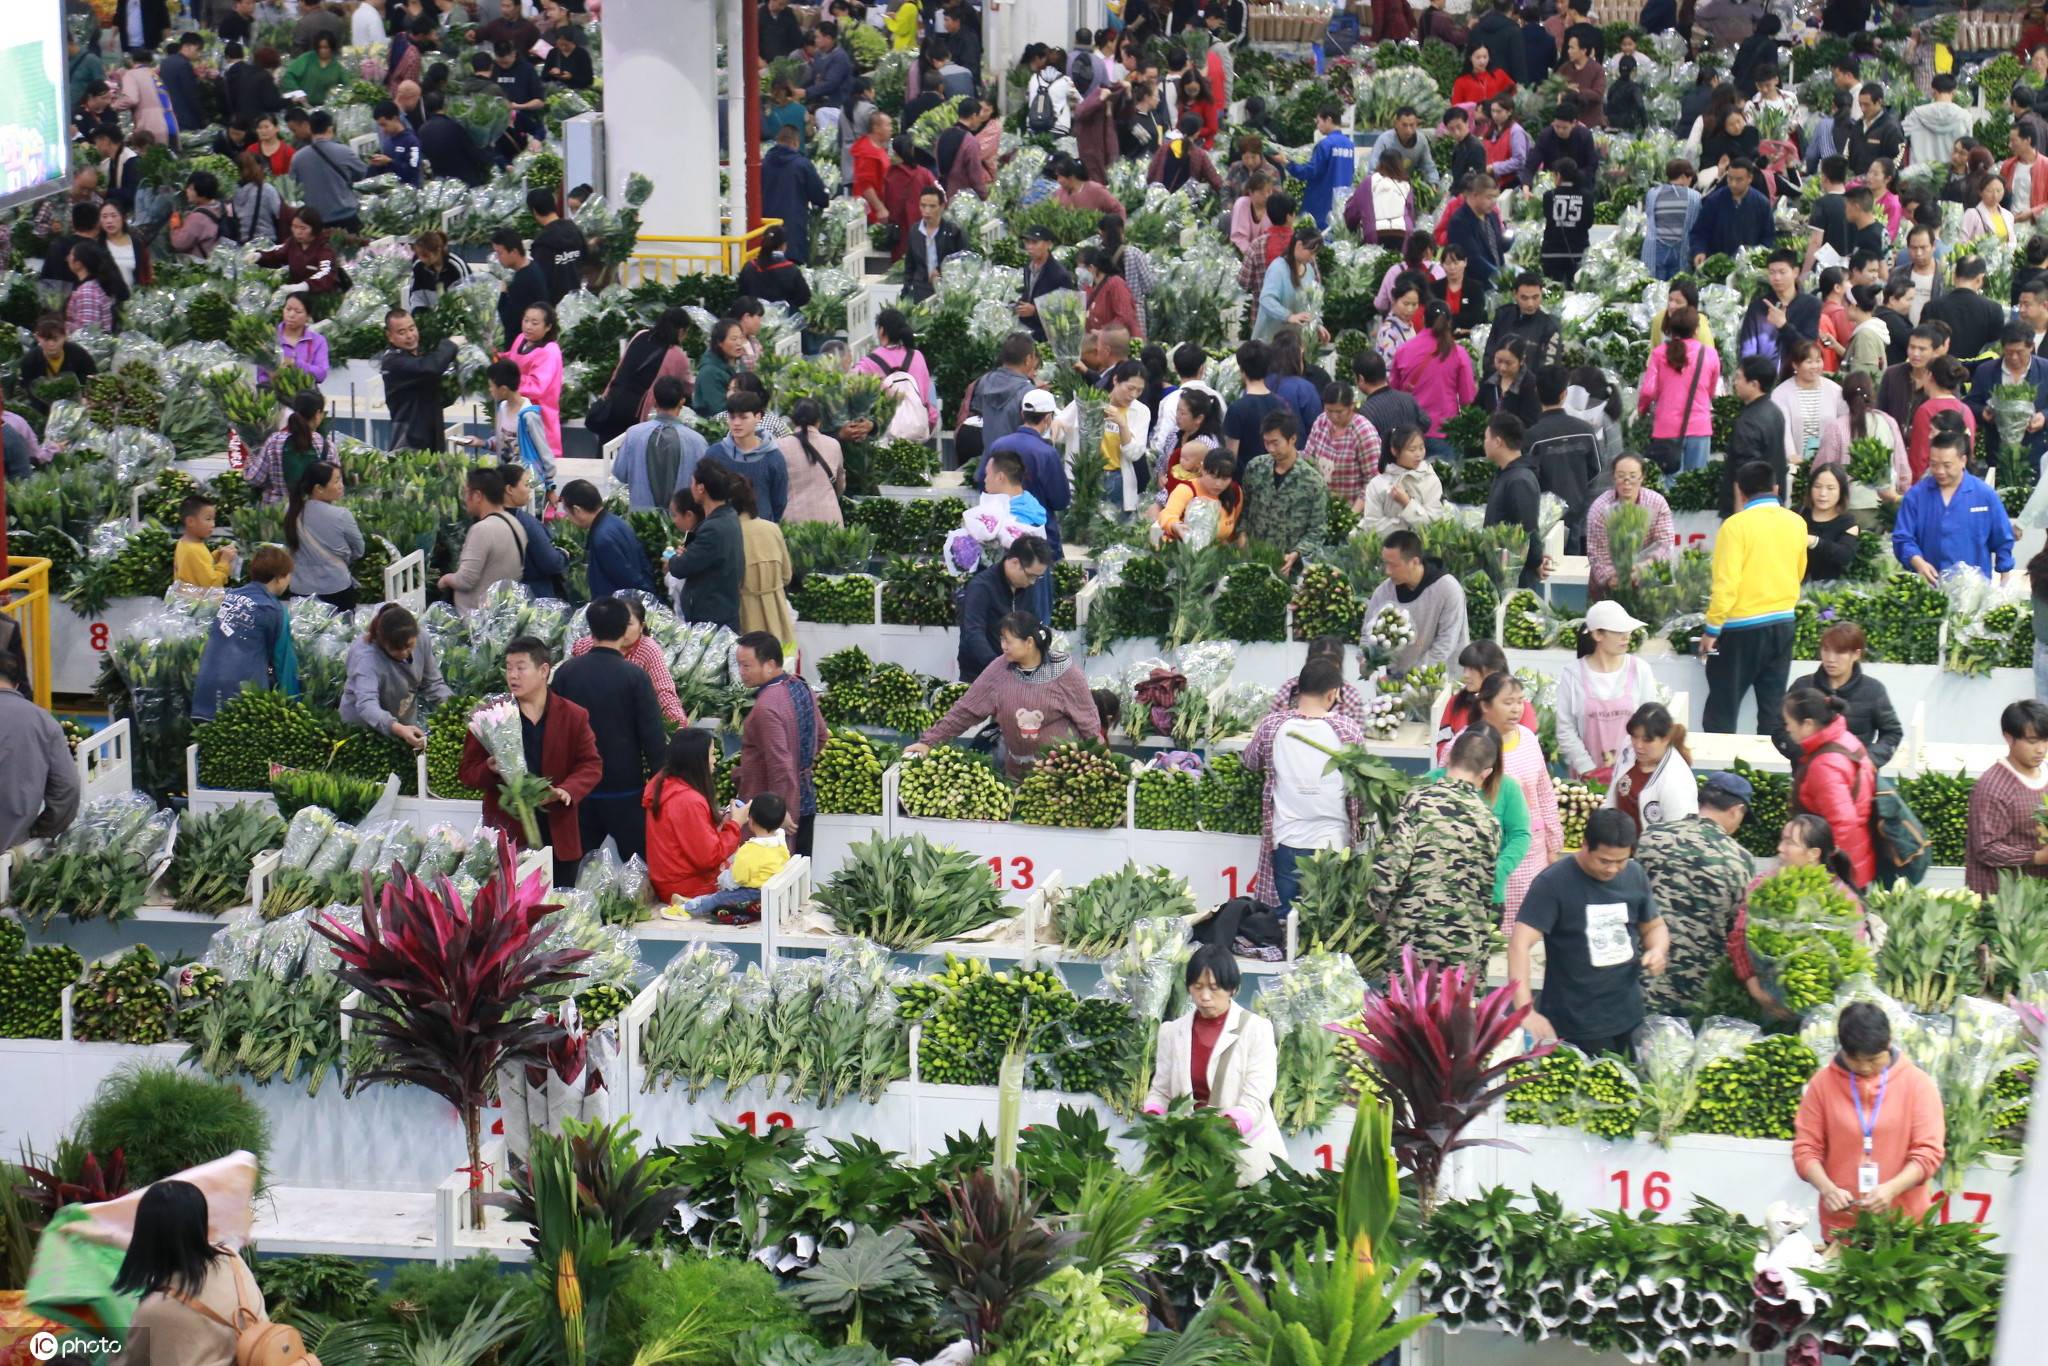 传统节日七夕将至,昆明斗南花卉市场人流如织,线上消费热度不减,线下